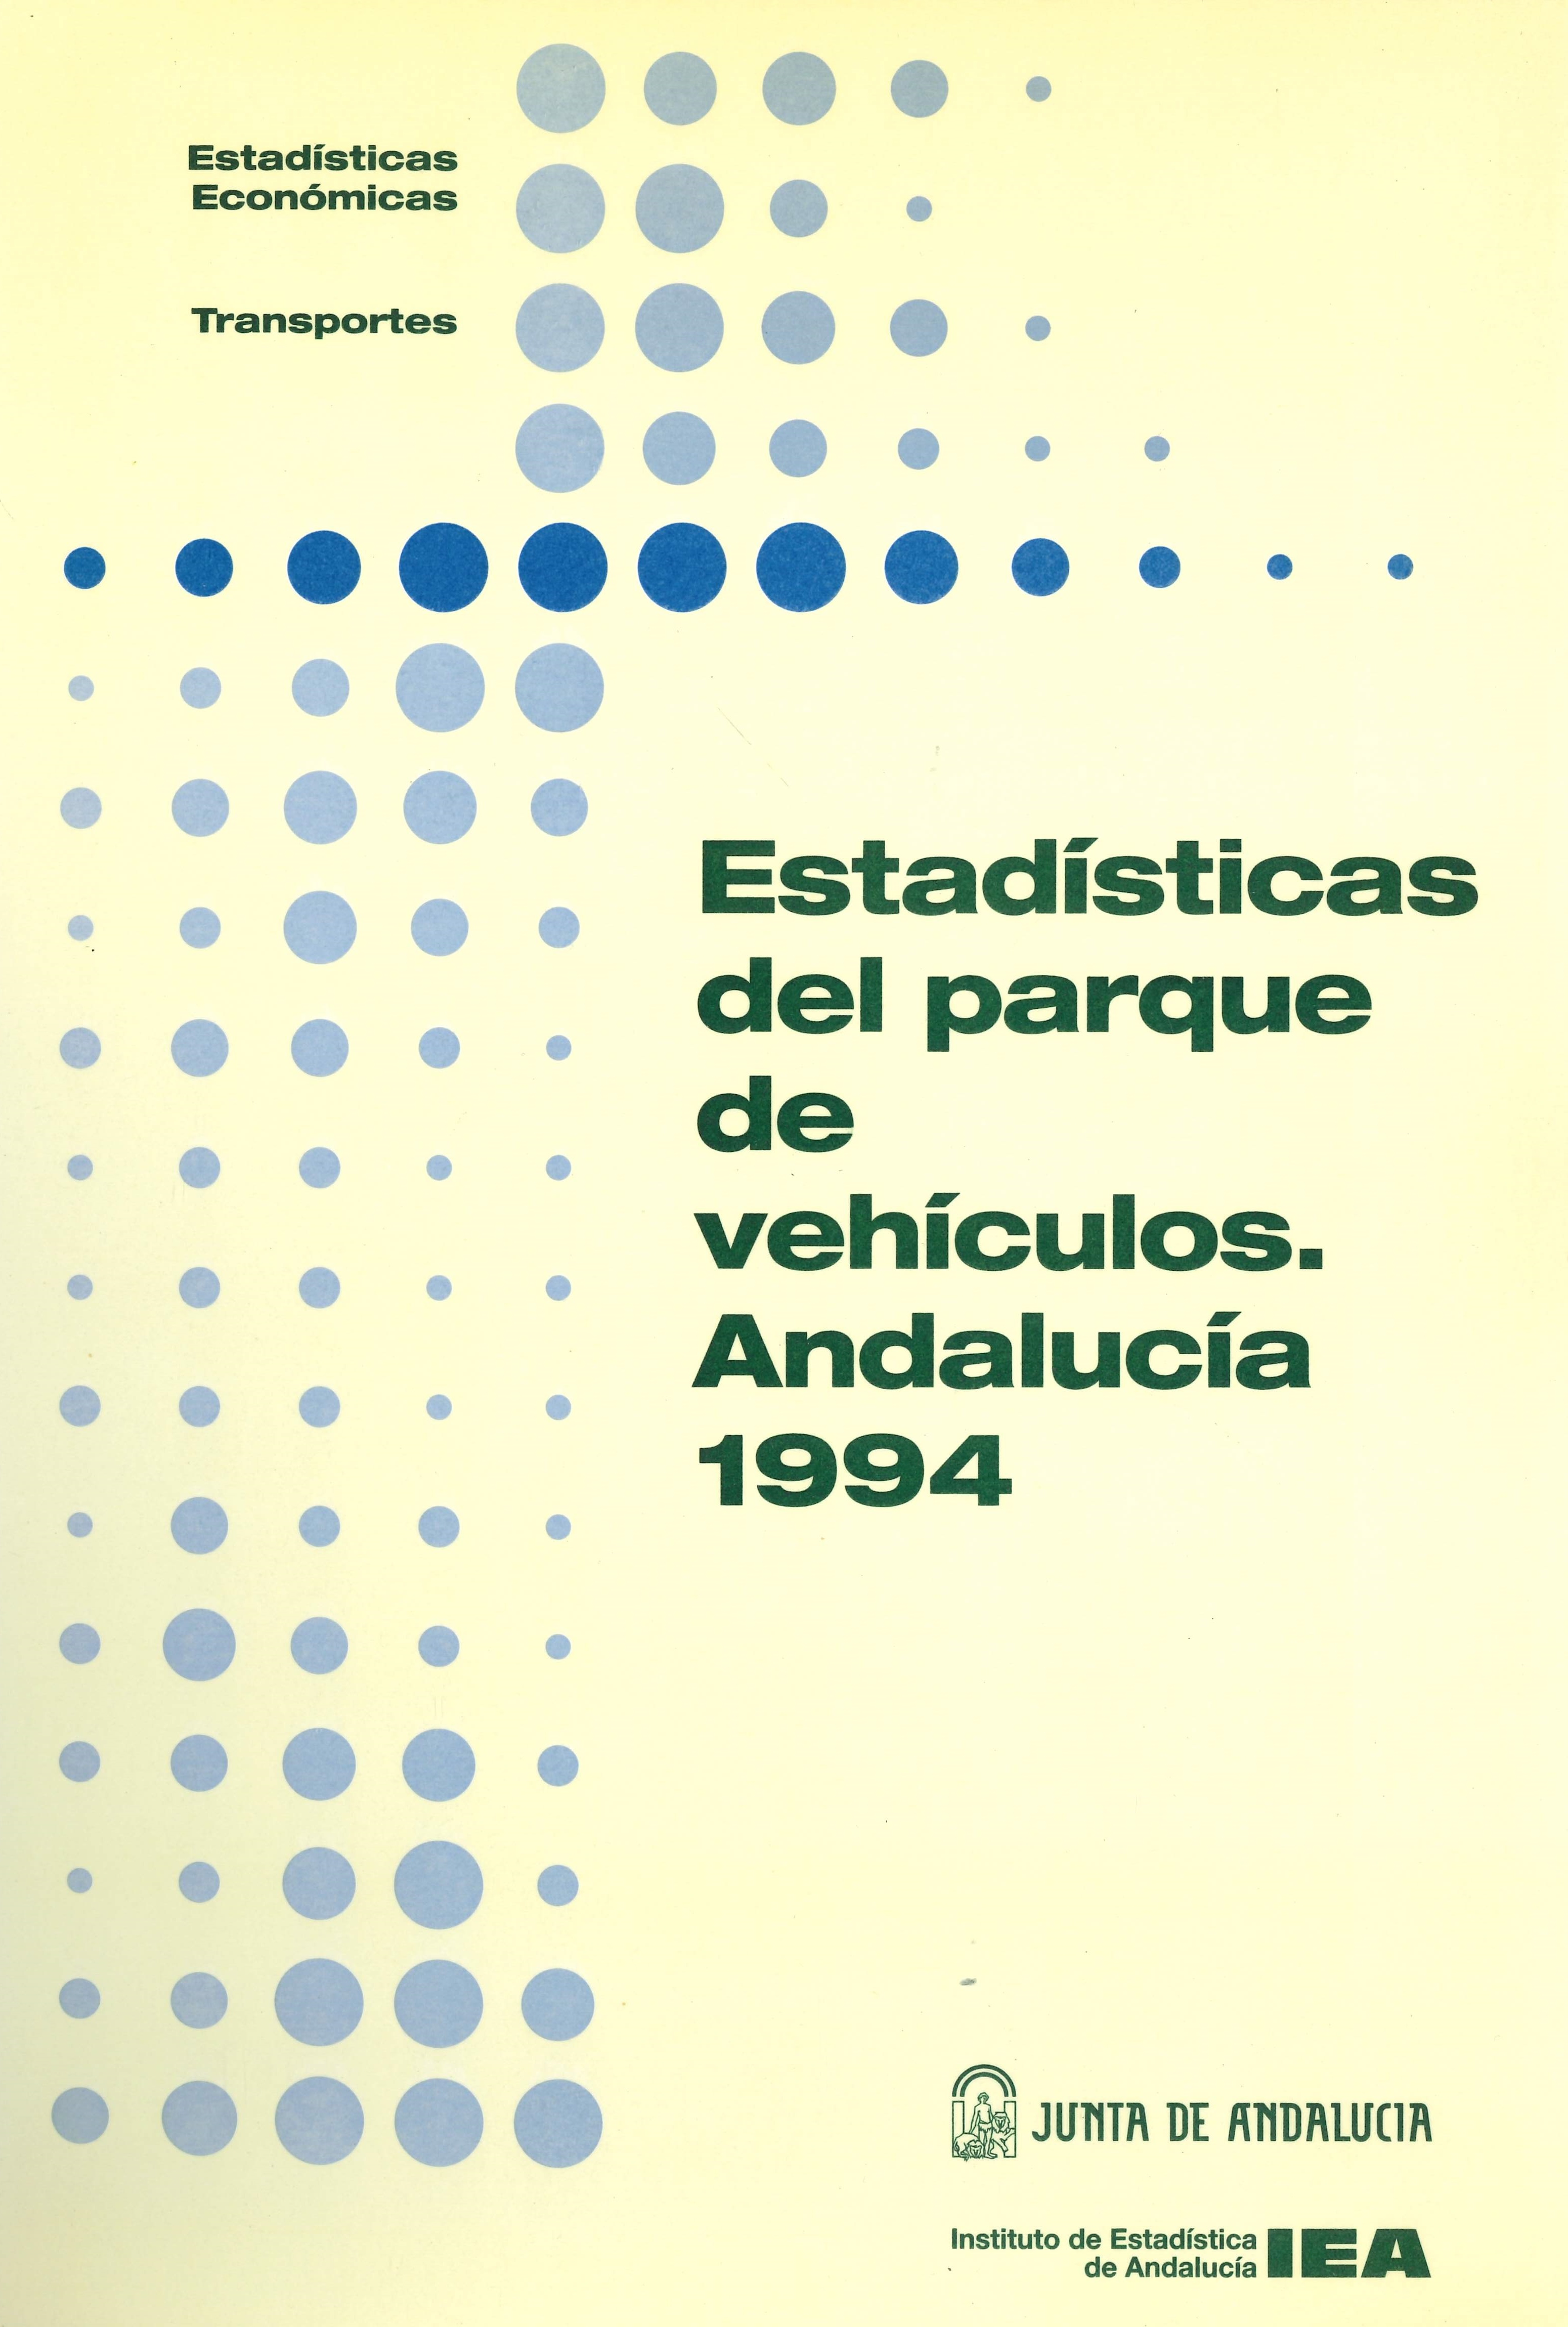 Imagen representativa de la publicación Estadísticas del parque de vehículos: Andalucía 1994